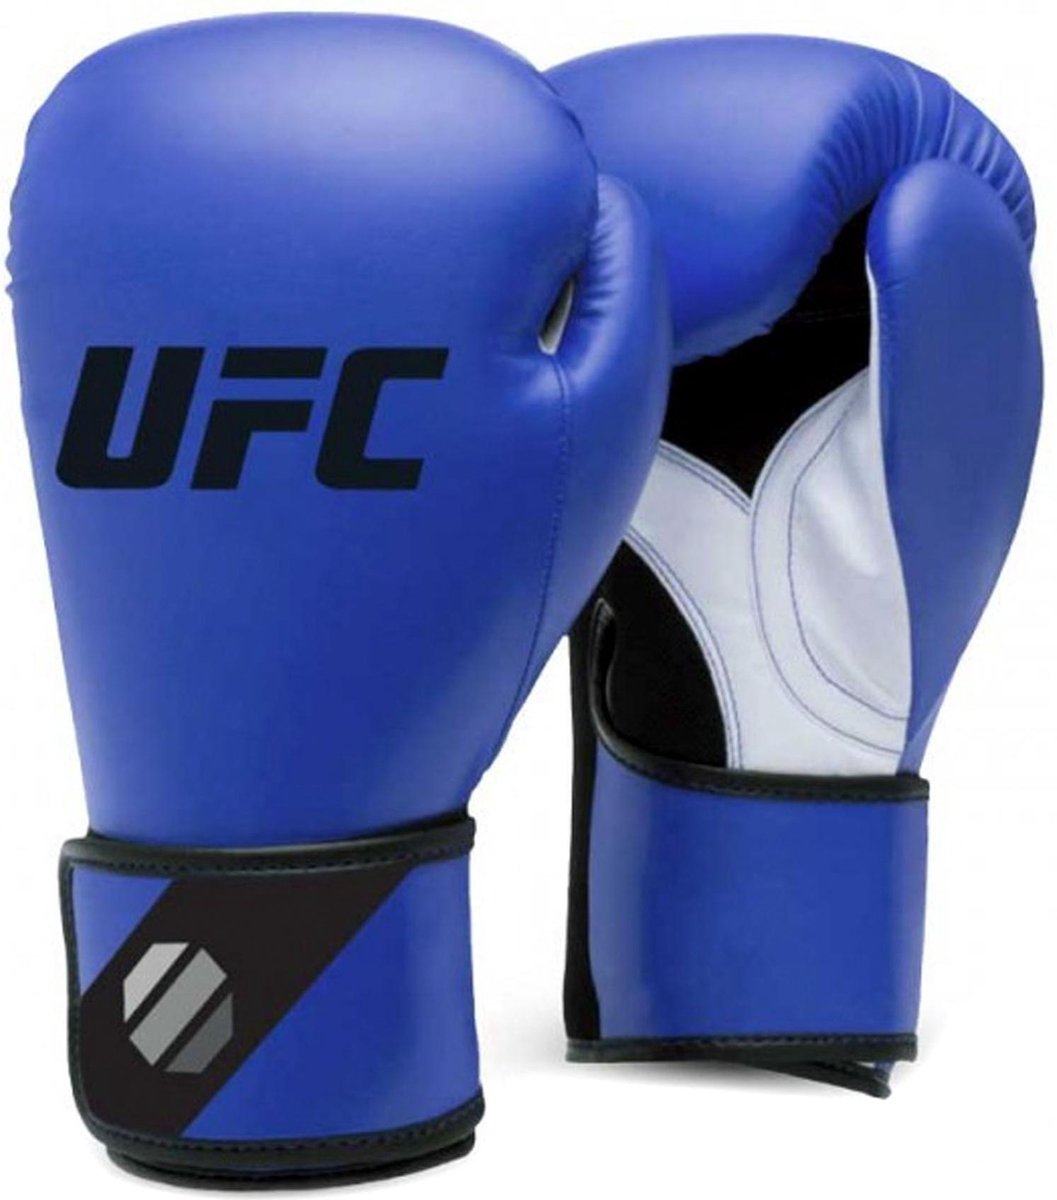 UFC Training Gloves Vechtsporthandschoenen - Unisex - blauw/zwart/wit